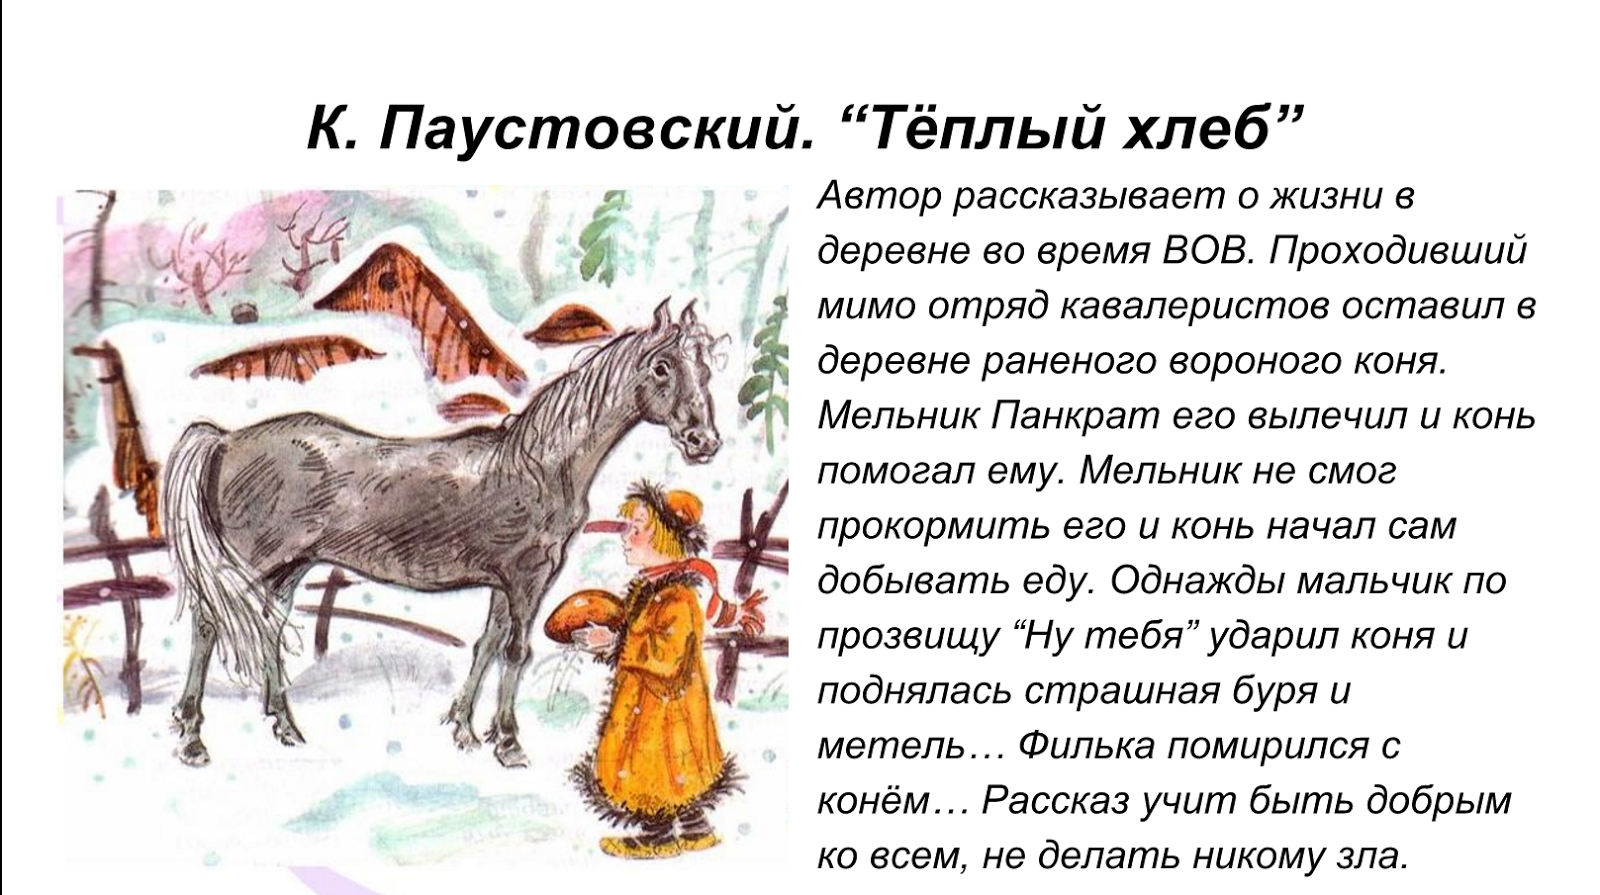 В Бережках жил мельник Панкрат, который приютил вороного коня Конь считался ничейный, поэтому каждый считал должным его покормить, то хлебушком чёрствым, а то и морковкой сладкой